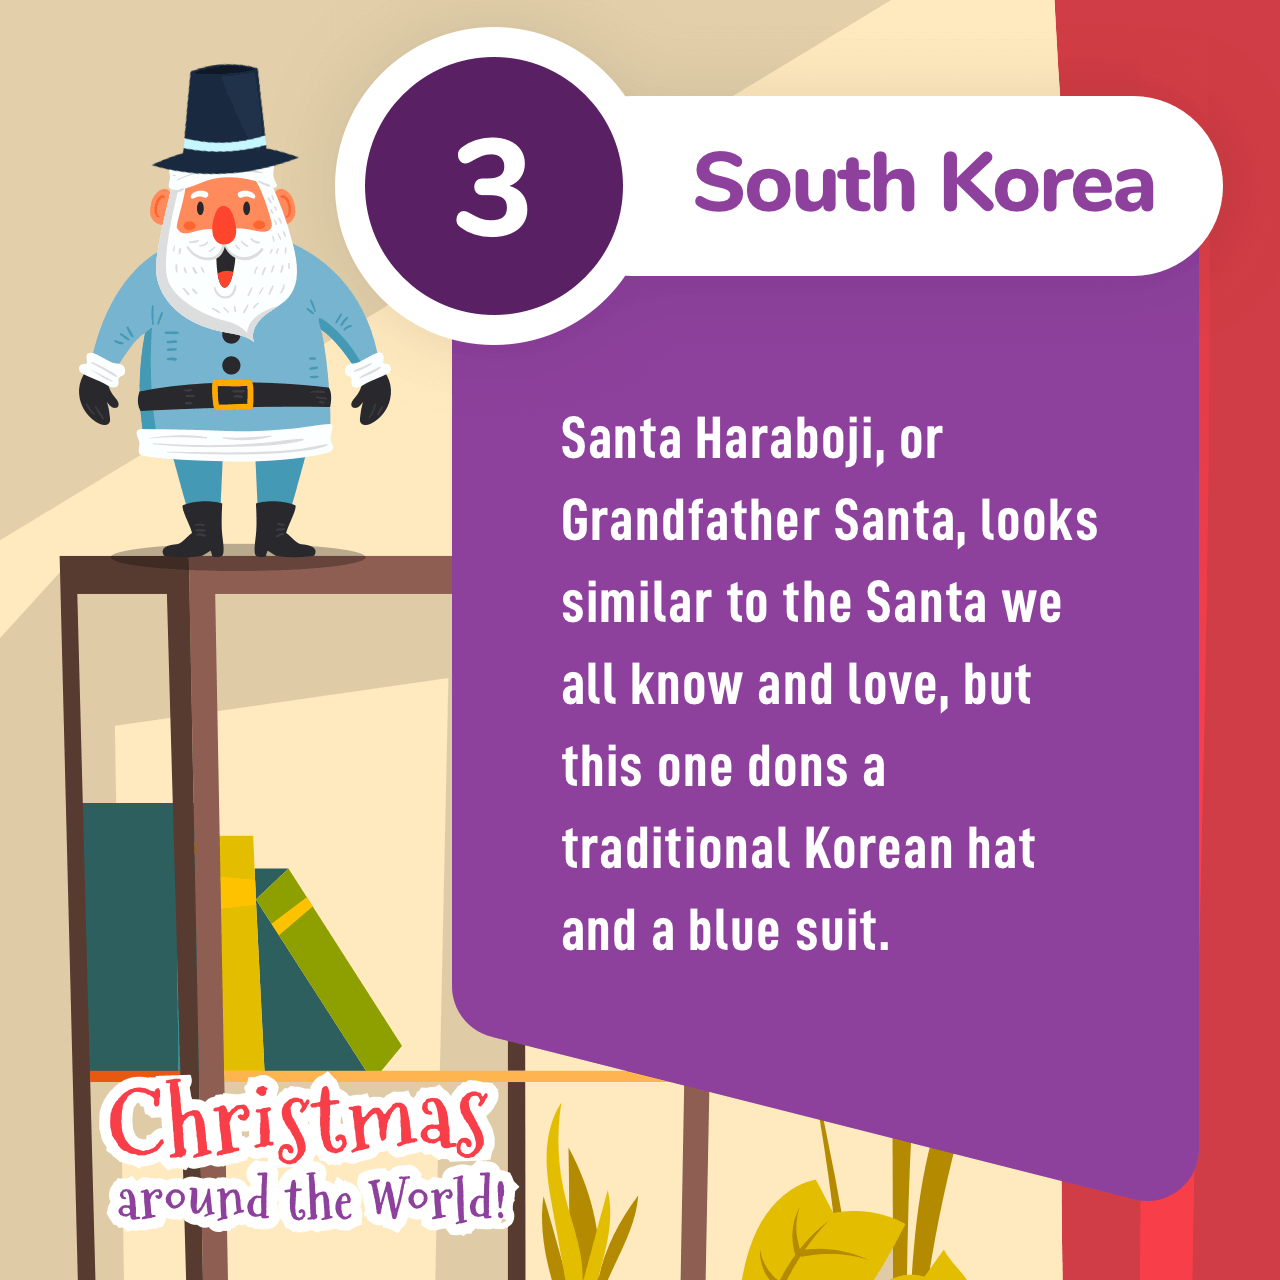 South Korea Christmas tradition